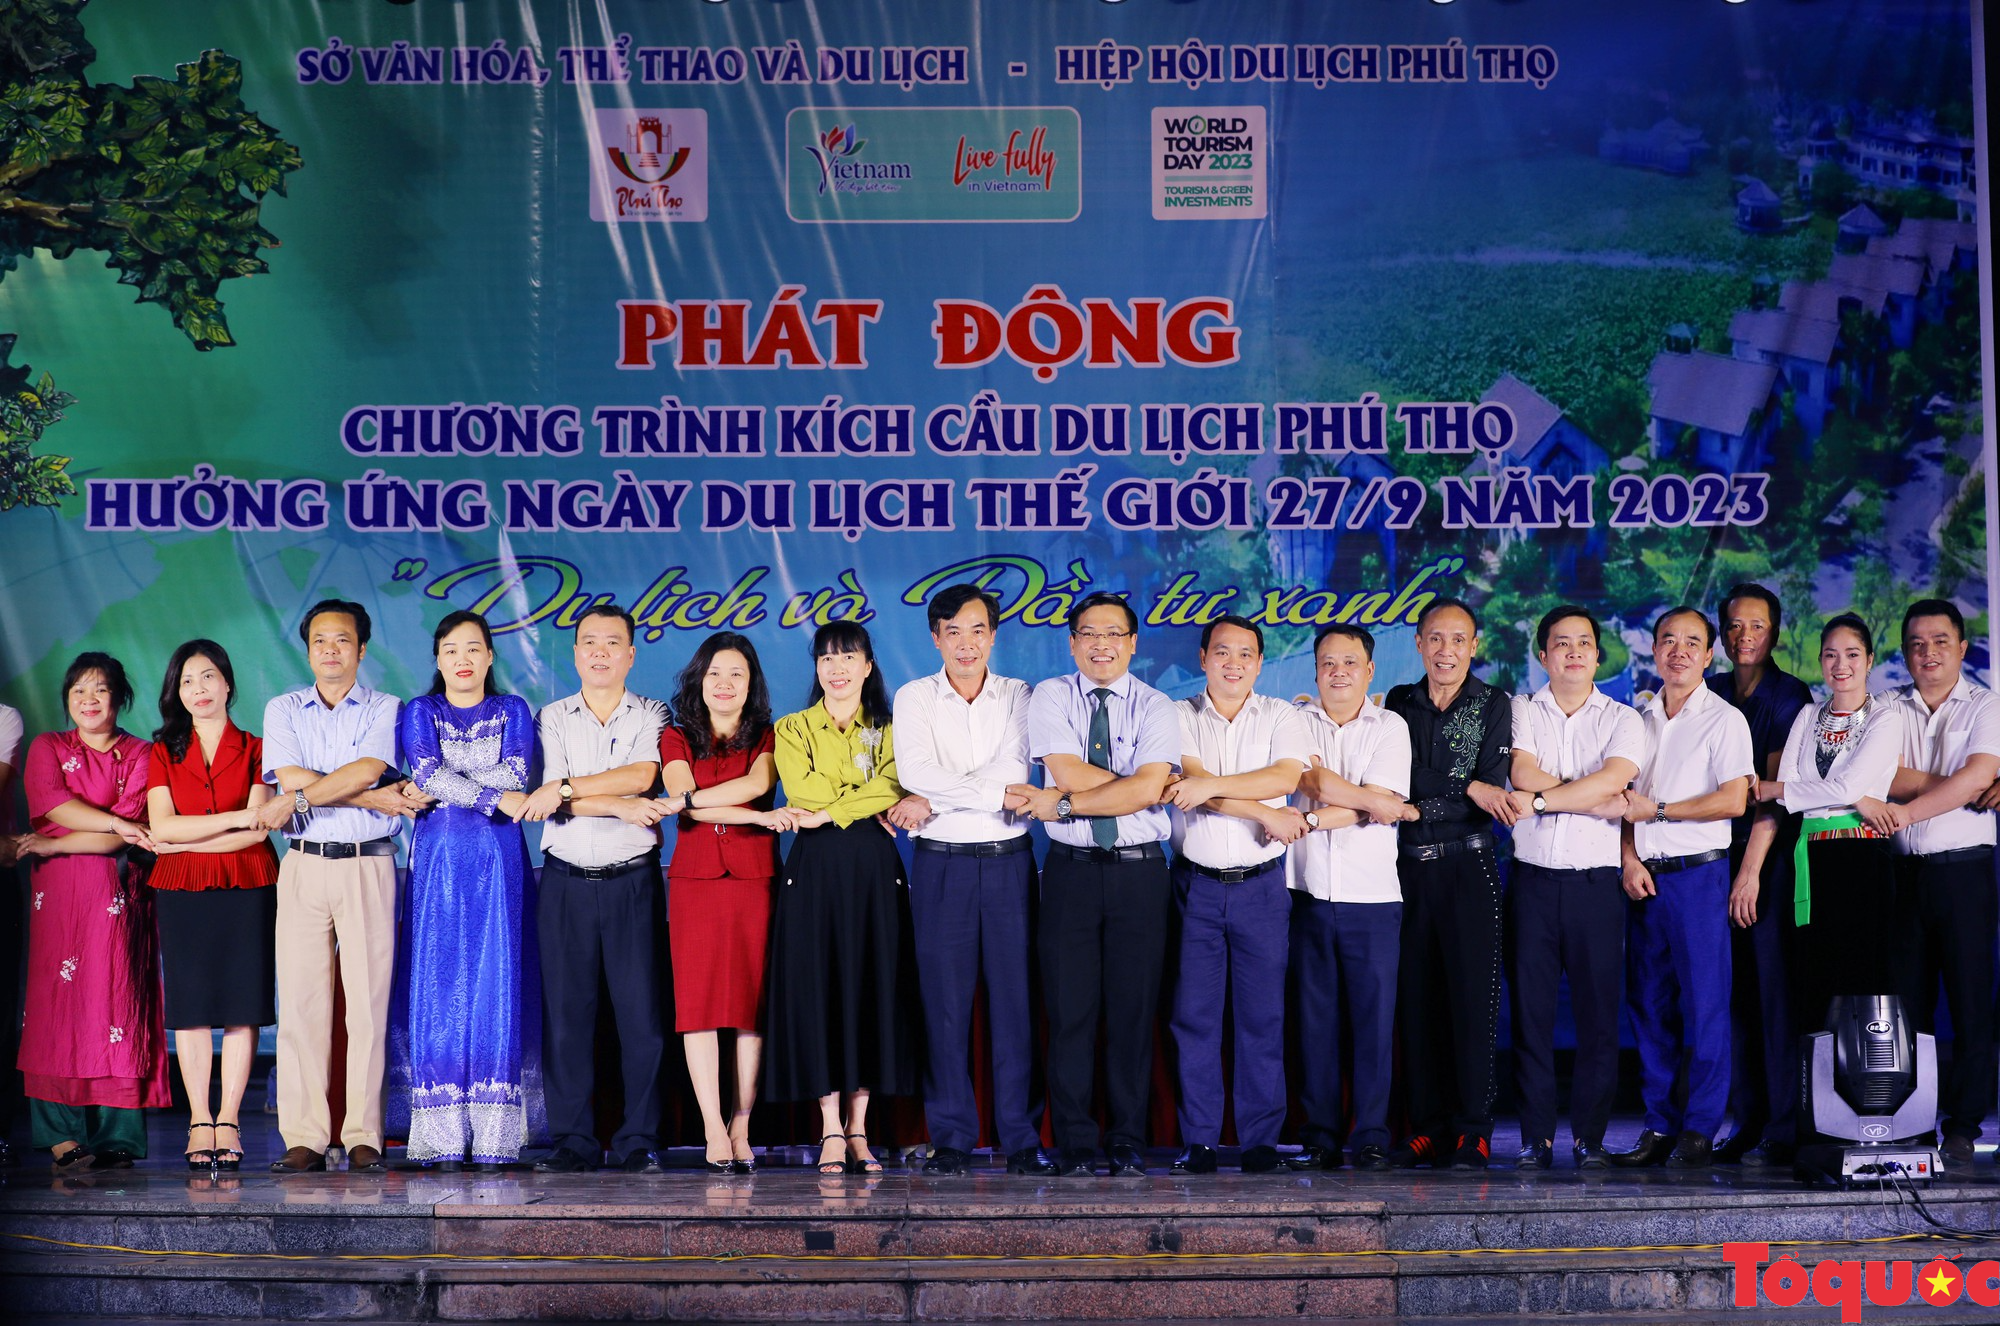 Phú Thọ phát động chương trình kích cầu Du lịch và hưởng ứng Ngày Du lịch Thế giới (27/9) năm 2023 - Ảnh 4.